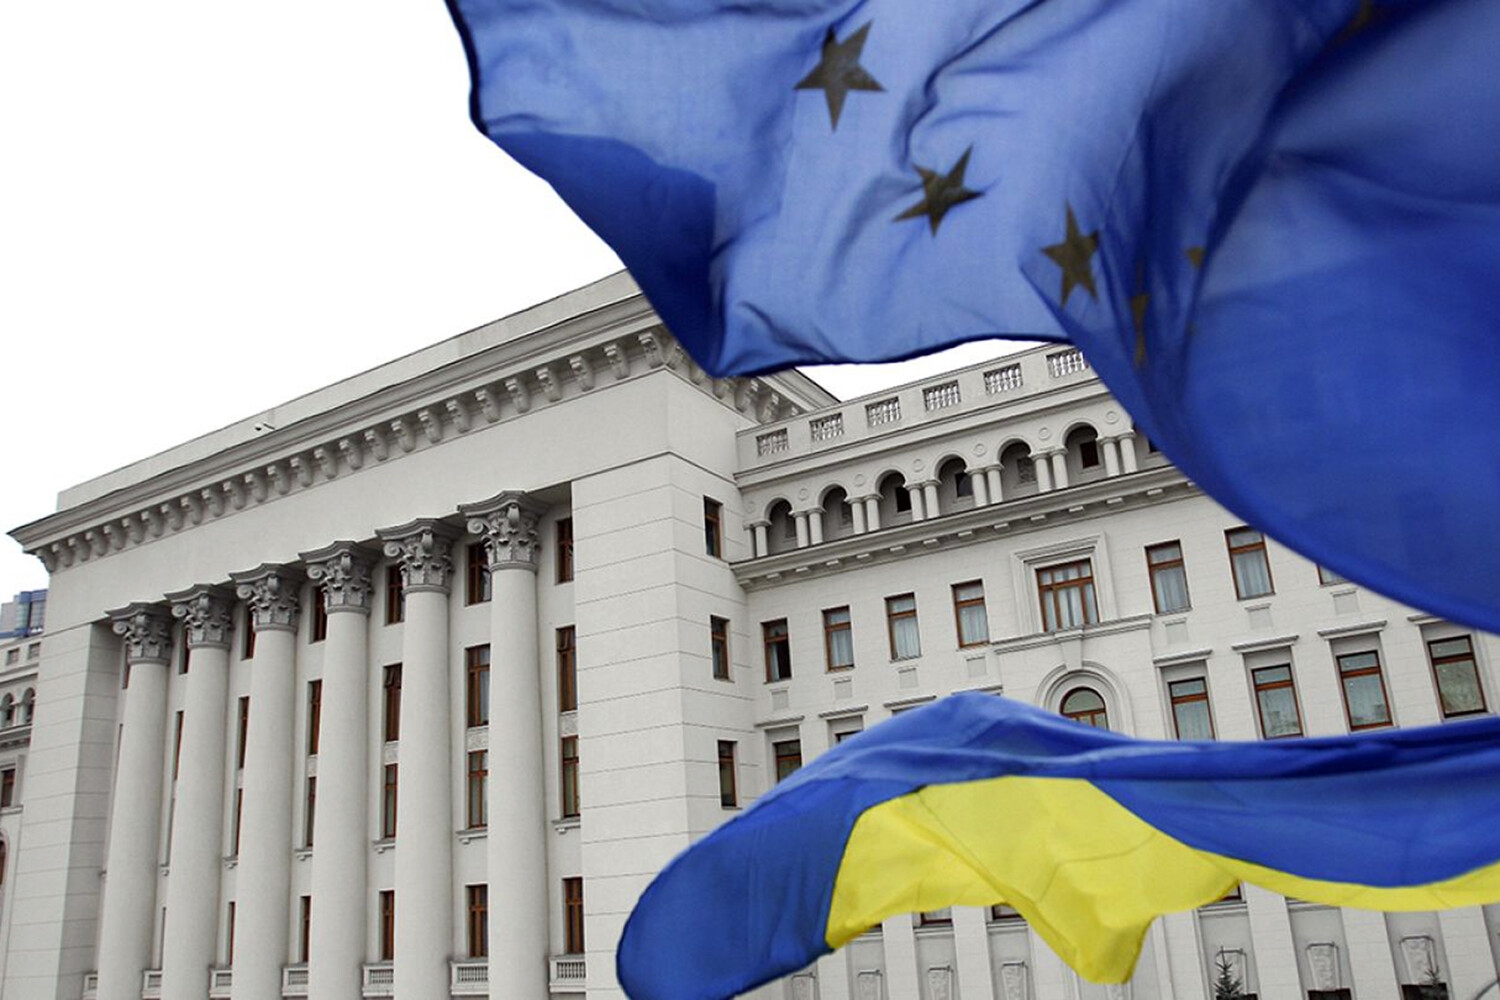 Евросоюз готовится объявить новый пакет финансовой помощи Украине на €50 млрд